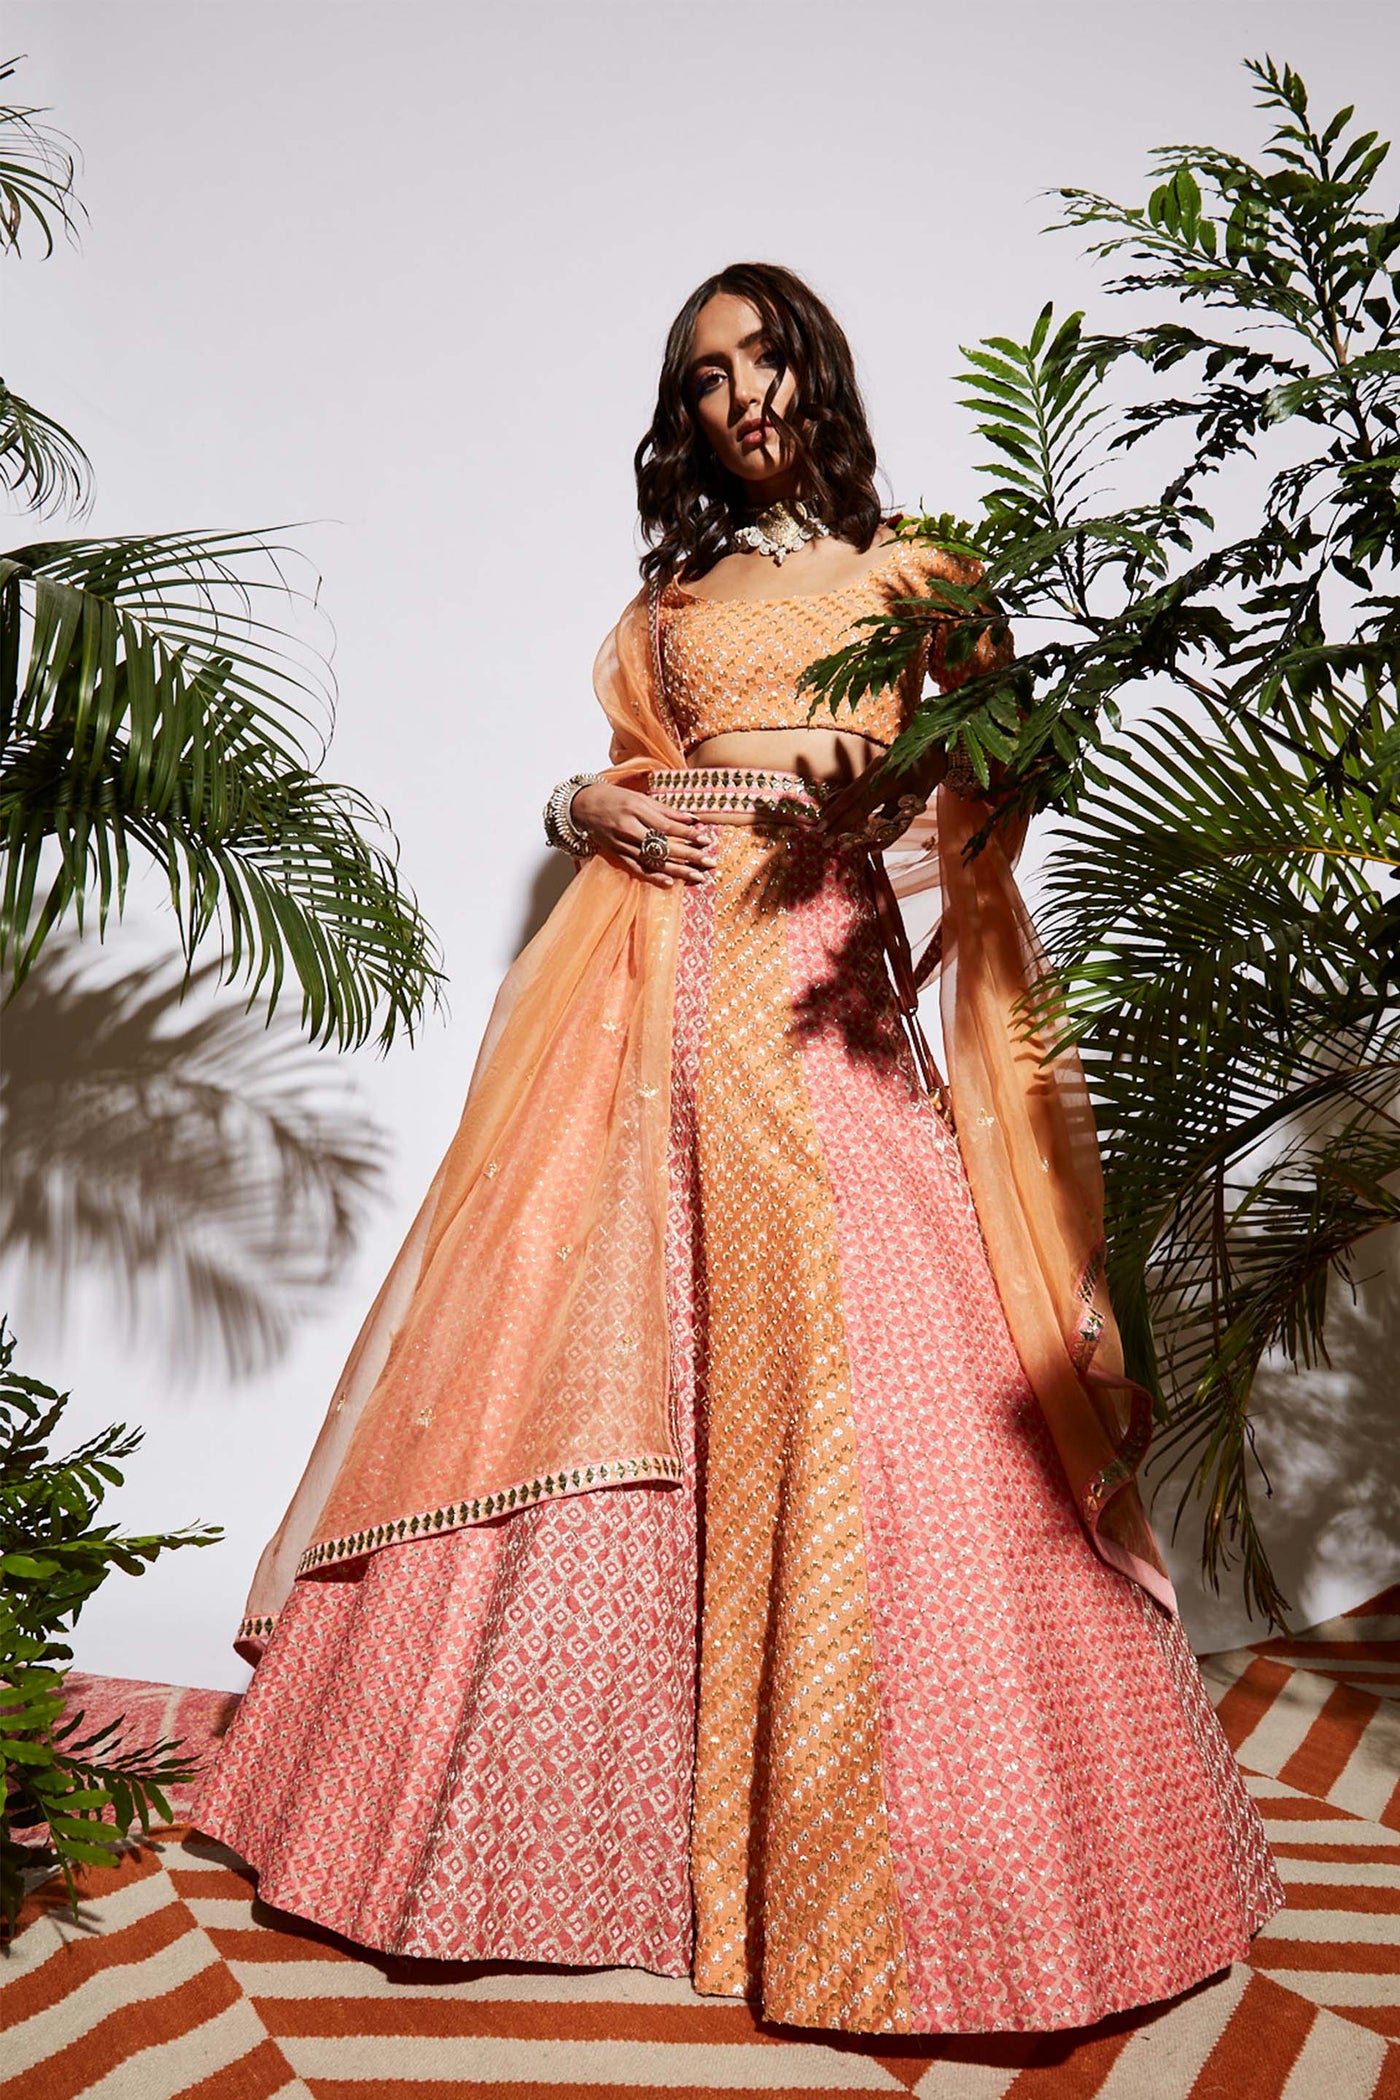 Sva by sonam and paras modi Shades Of Pink And Orange Multi Kali Lehenga bridal wedding indian designer wear online shopping melange singapore